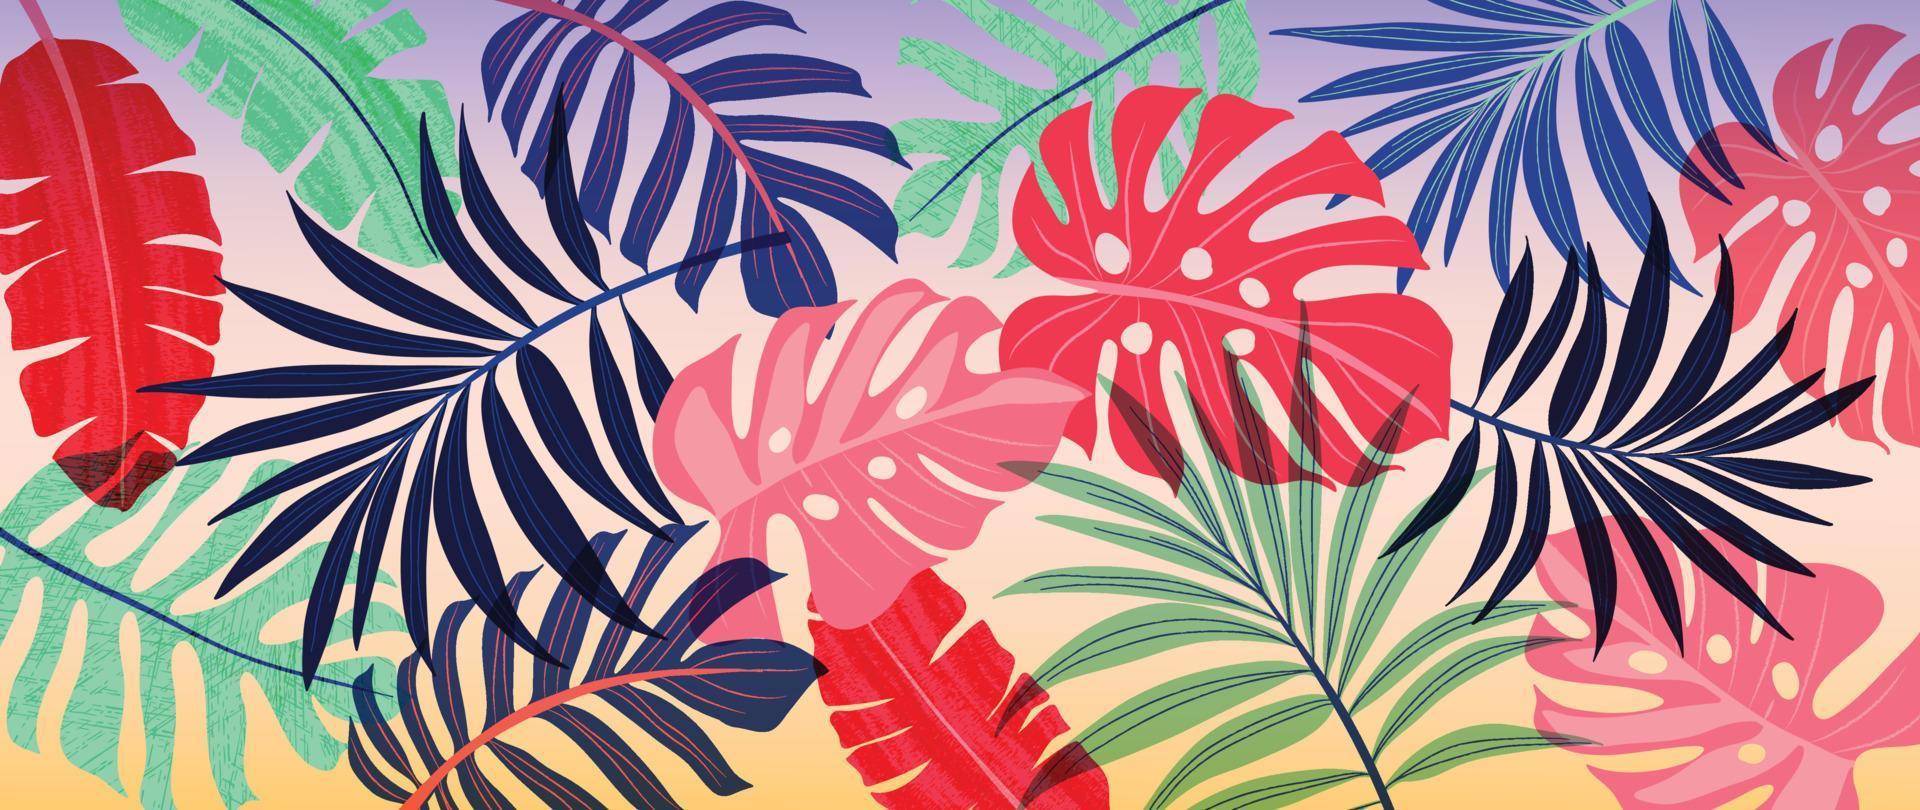 färgrik tropisk bakgrund vektor illustration. djungel växter, monstera handflatan löv, exotisk vår sommar stil grunge vattenfärg textur. samtida konst design för Hem dekoration, tapet.